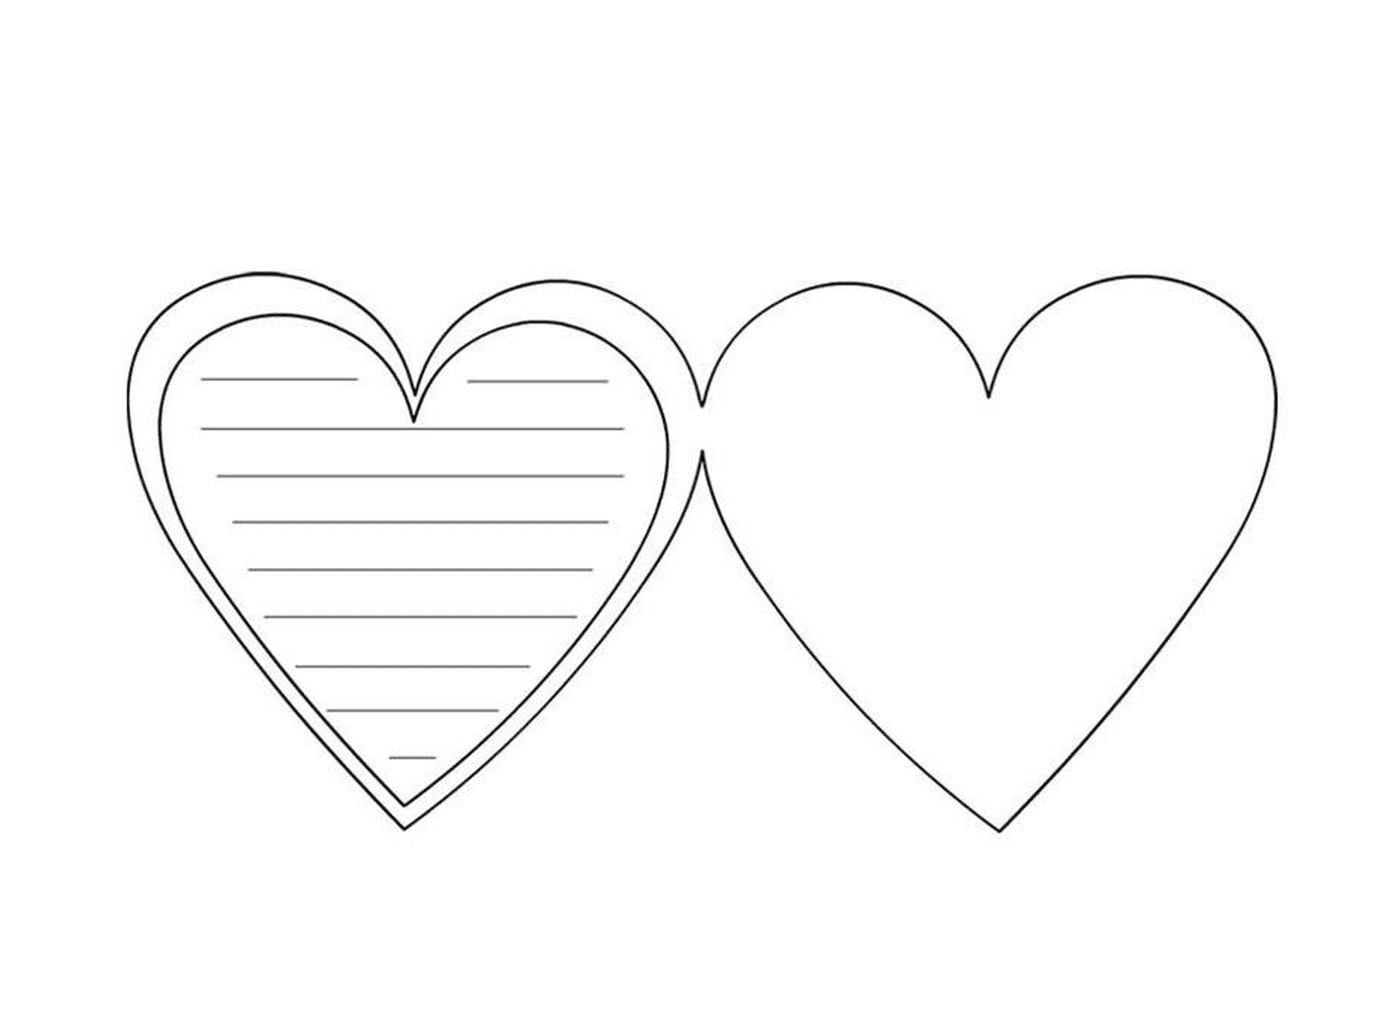  Dos corazones para escribir un mensaje romántico 